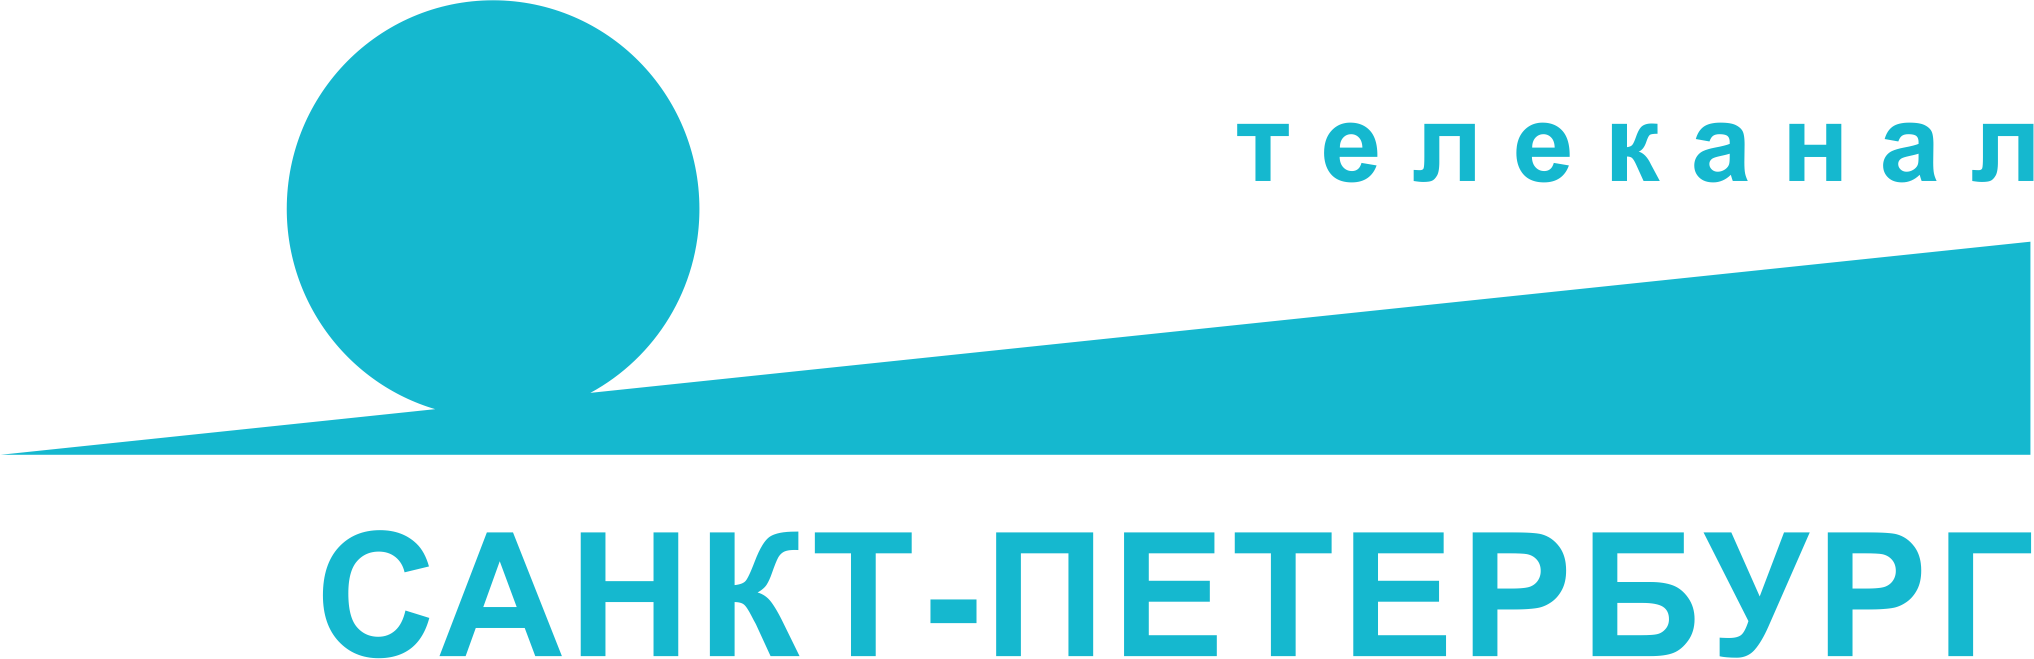 Канал Санкт-Петербург логотип. Телеканал Санкт-Петербург логотип PNG. Телерадиокомпания Петербург логотип. Каналы Санкт-Петербурга. Канал санкт петербург телефон